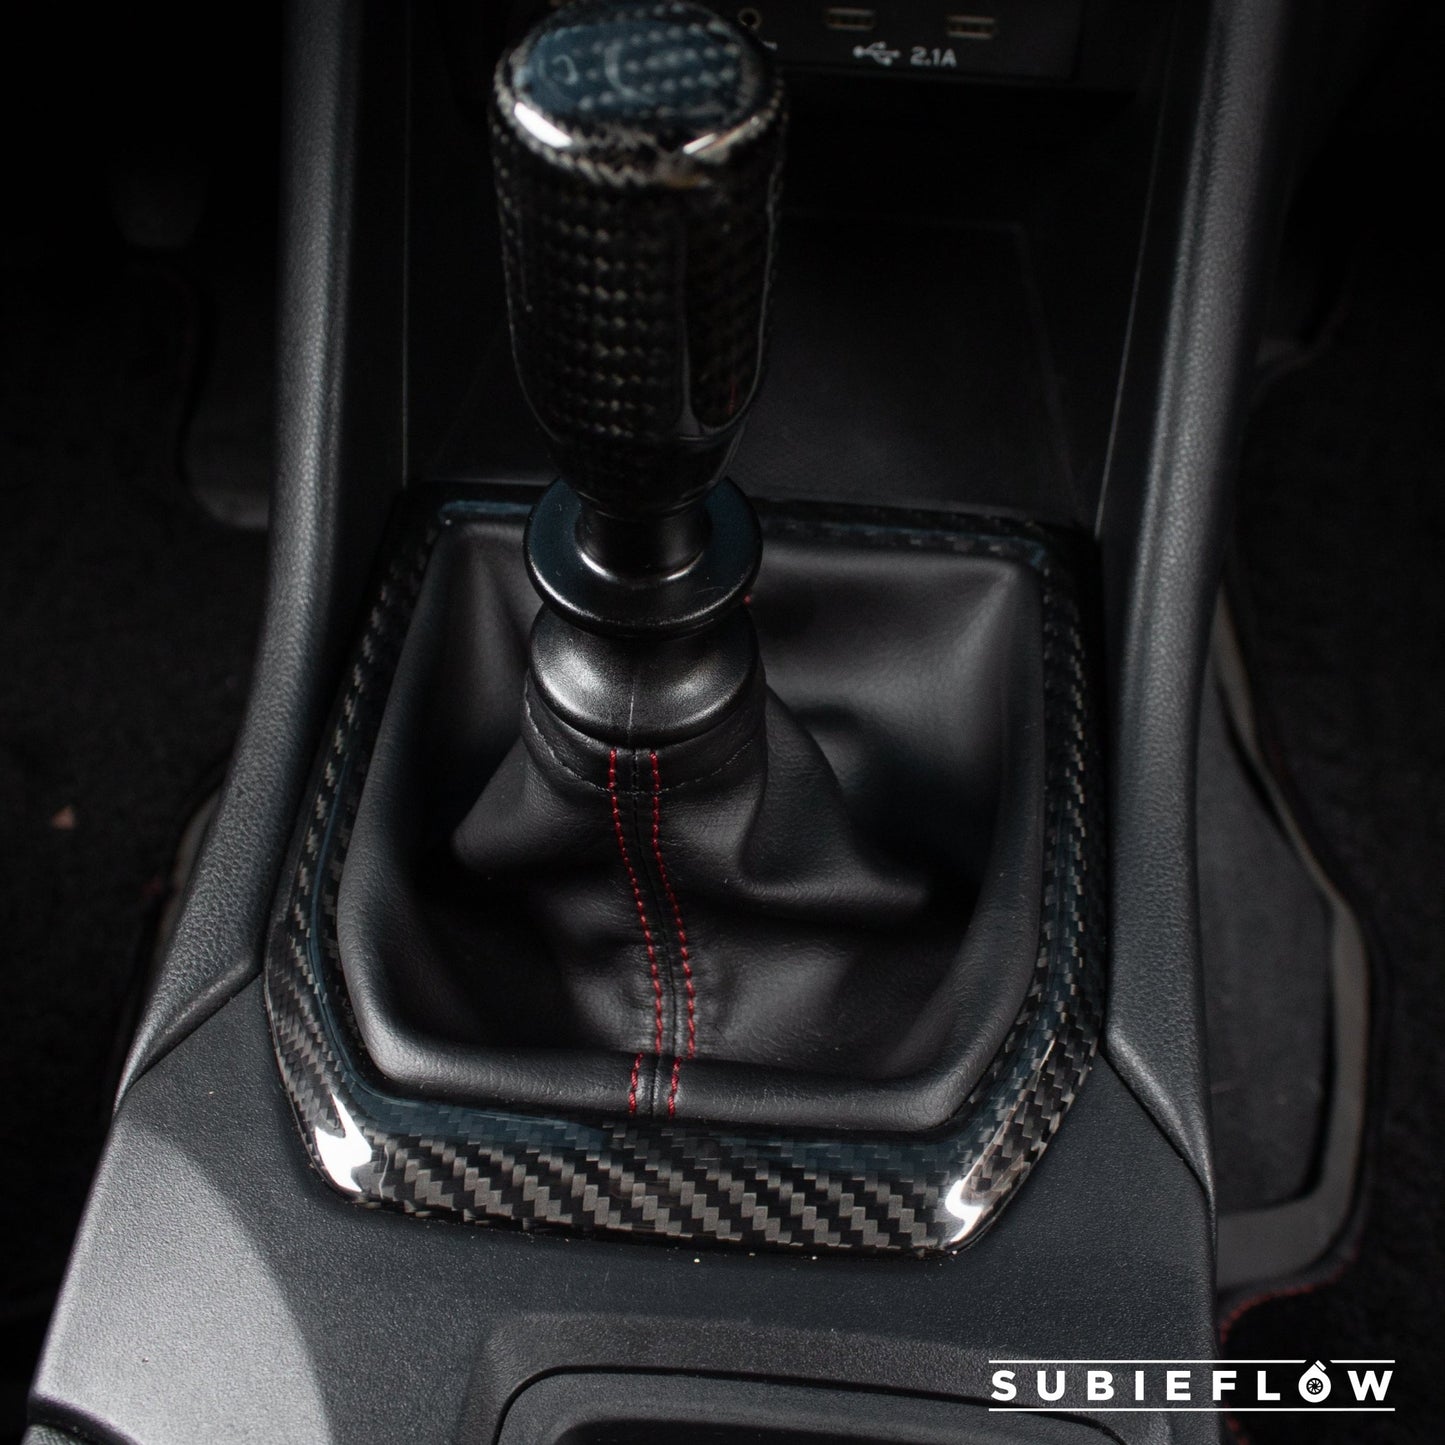 2022-25 Subaru WRX Black Carbon Fiber Shifter Trim Cover - SubieFlow